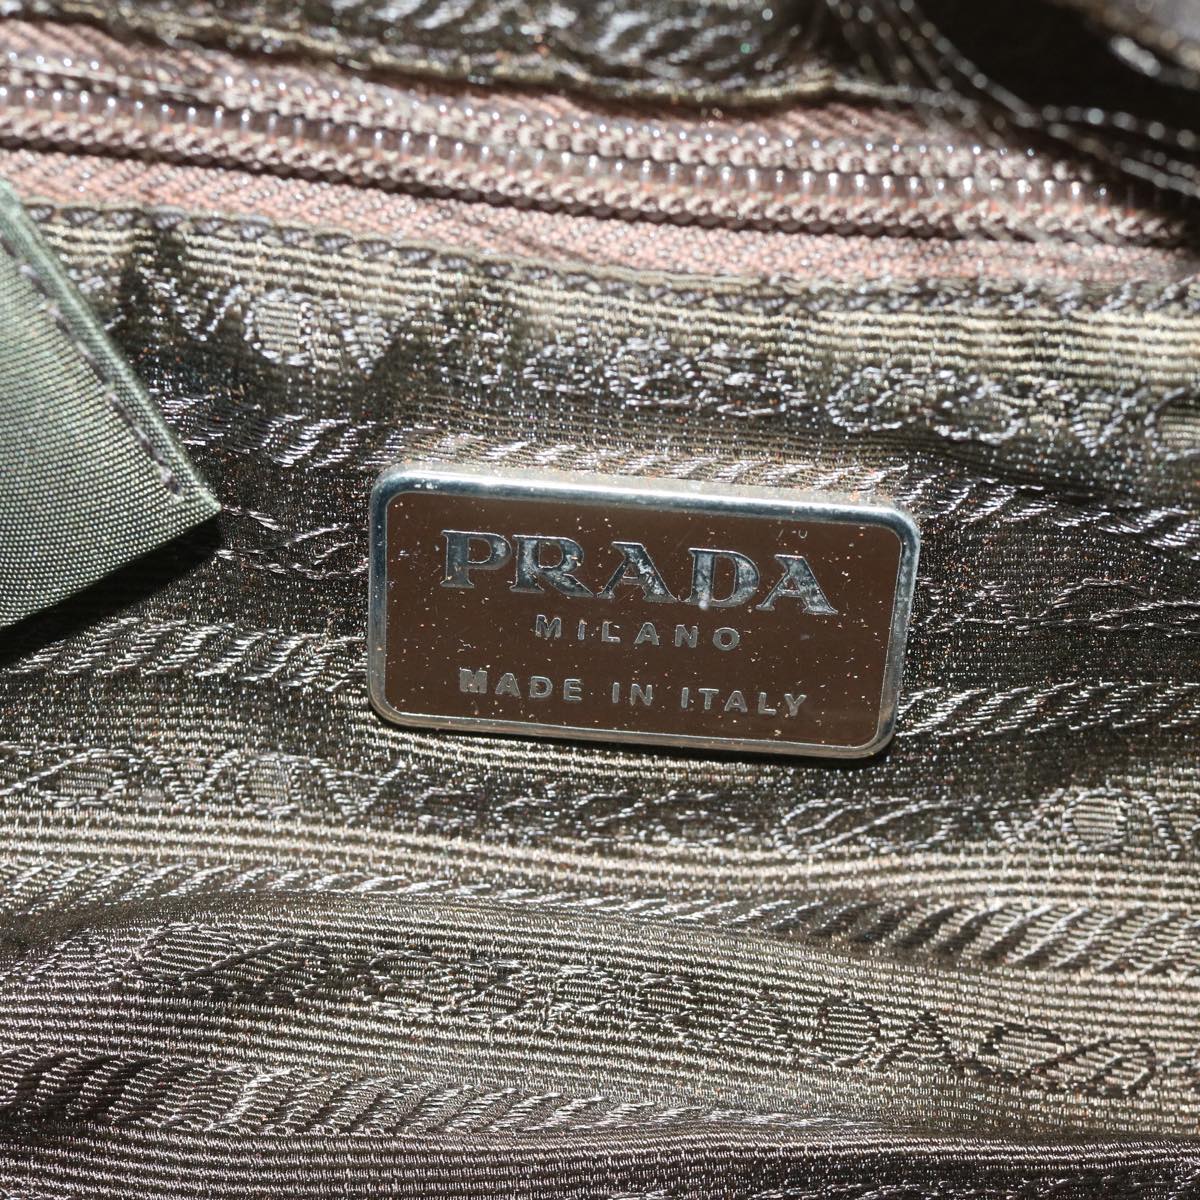 PRADA Hand Bag Nylon Khaki Auth 63973